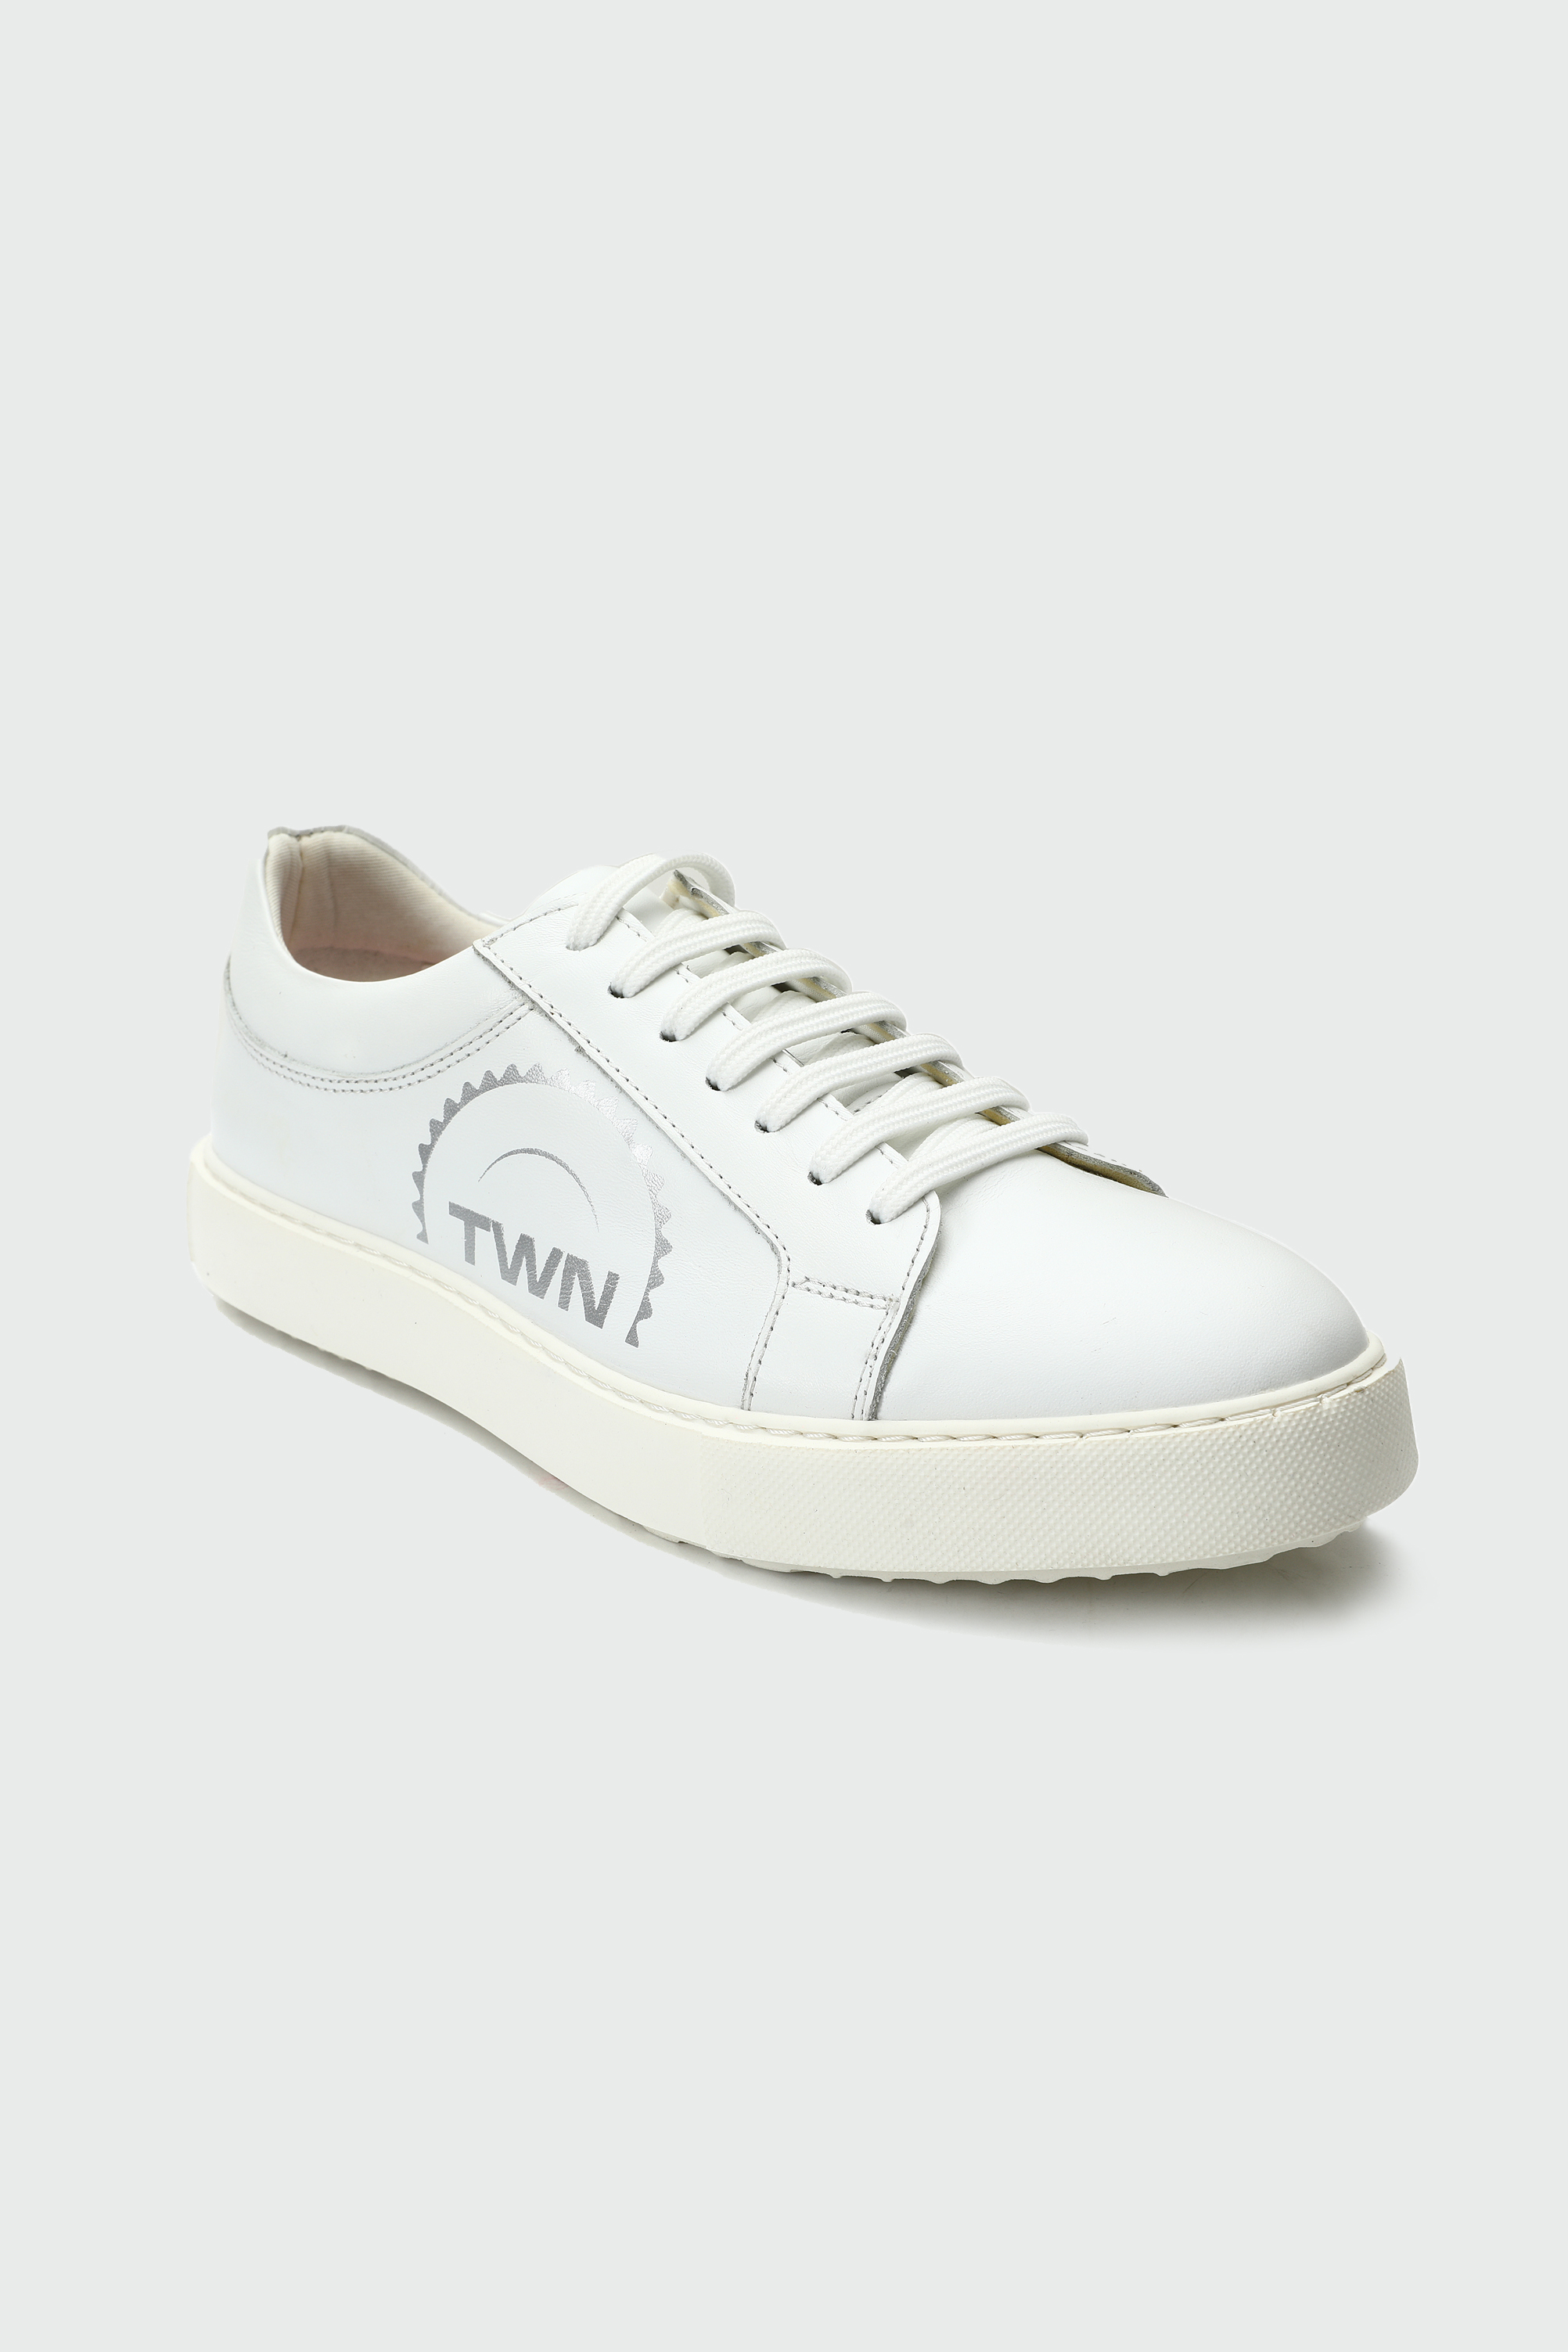 Ds Damat Twn Beyaz Sneaker Ayakkabı. 1